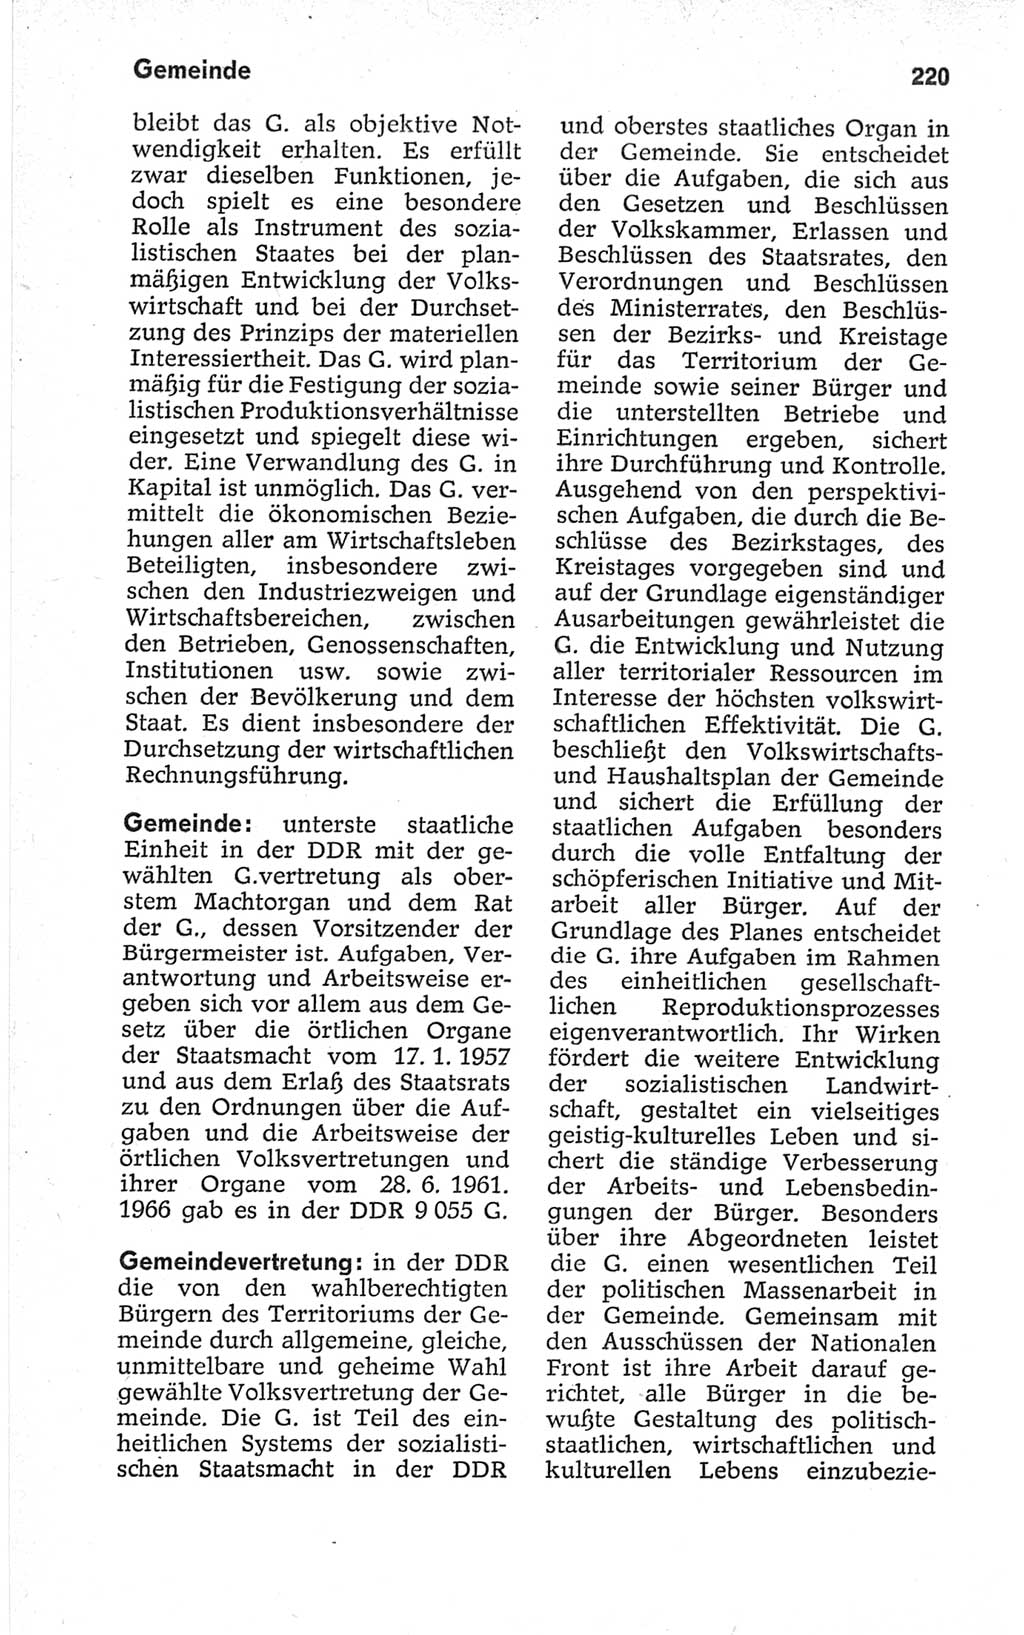 Kleines politisches Wörterbuch [Deutsche Demokratische Republik (DDR)] 1967, Seite 220 (Kl. pol. Wb. DDR 1967, S. 220)